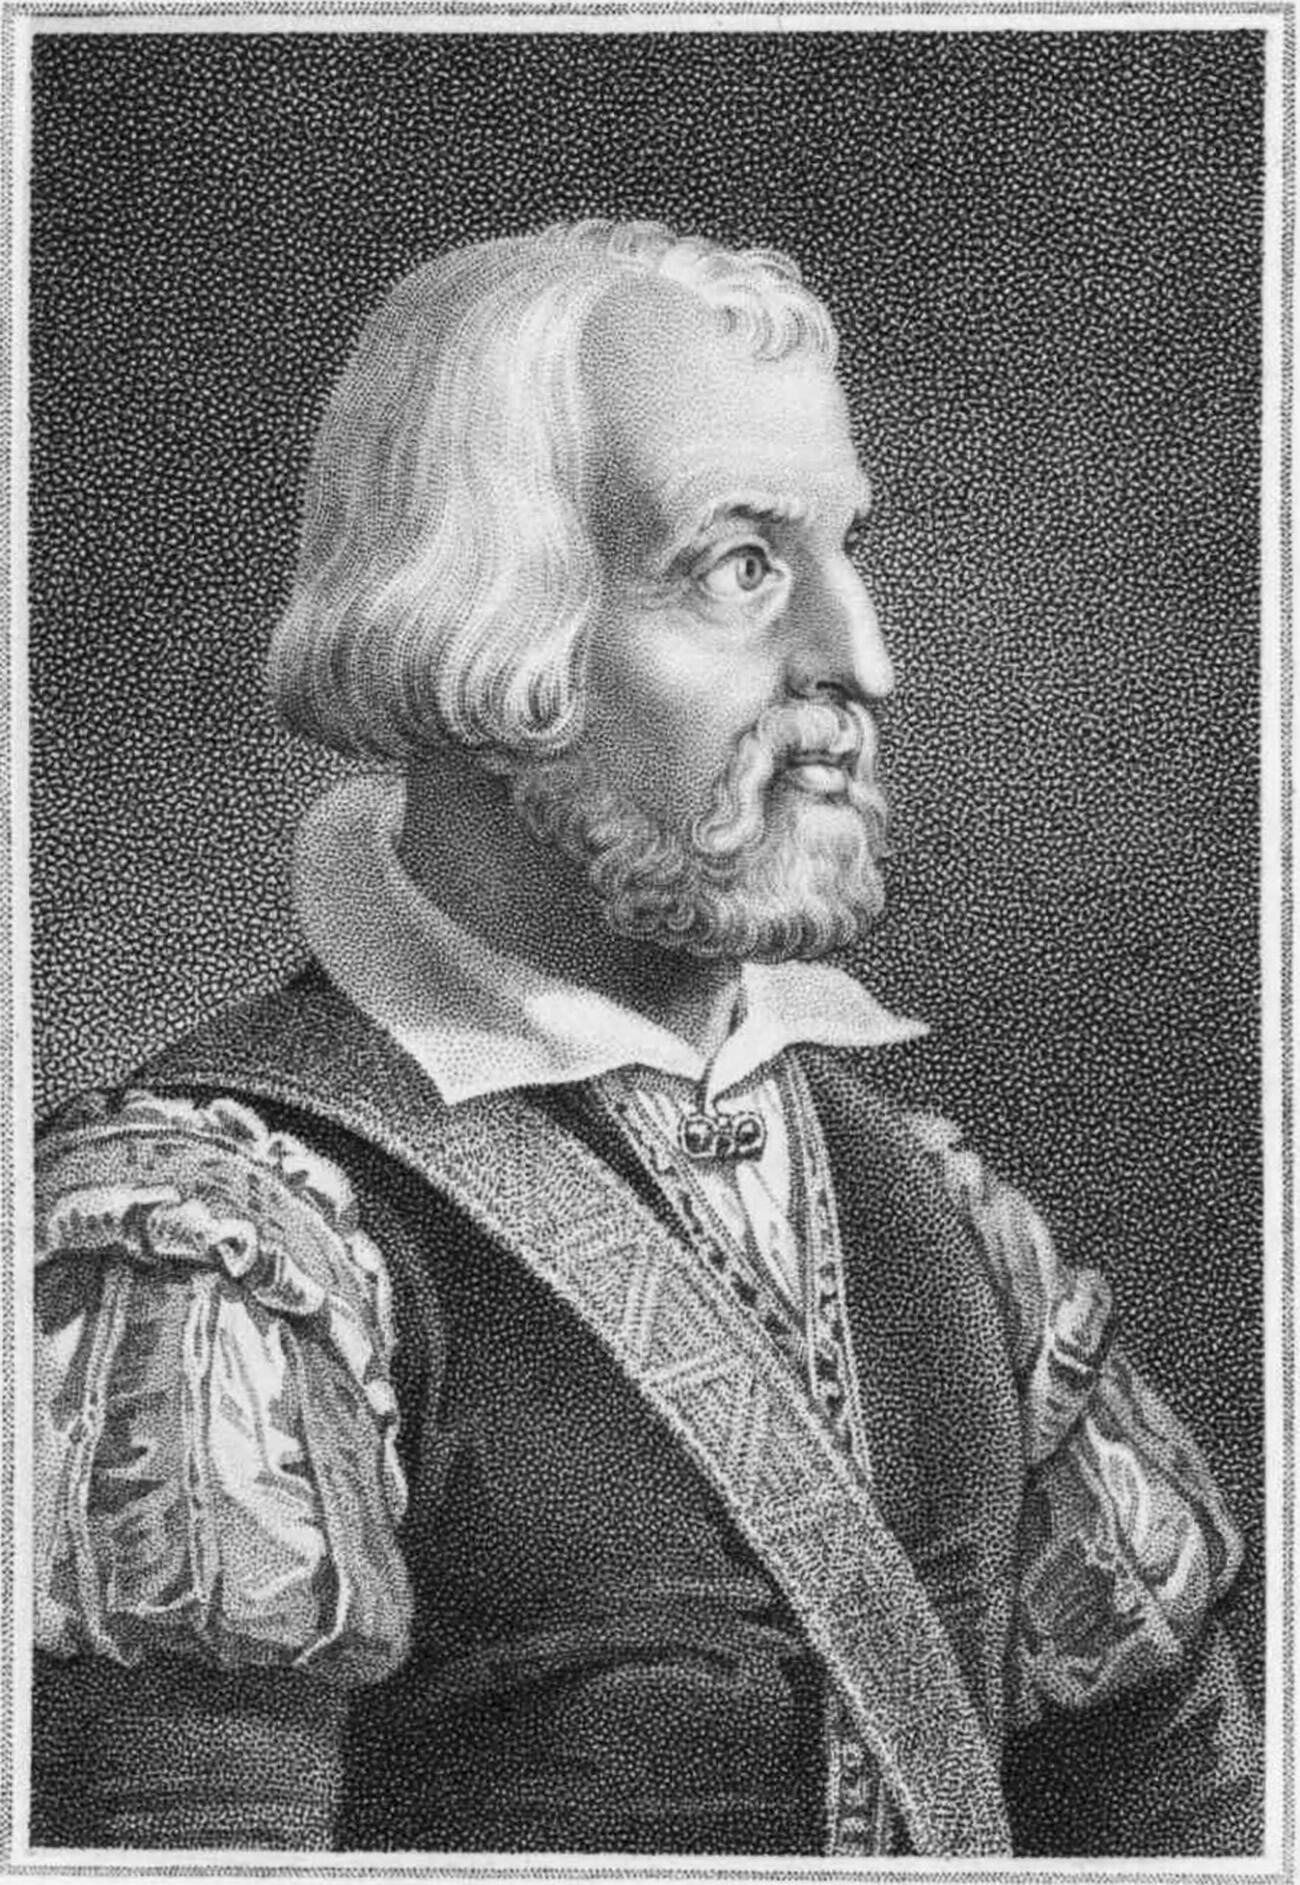 Sigismund von Herberstein.